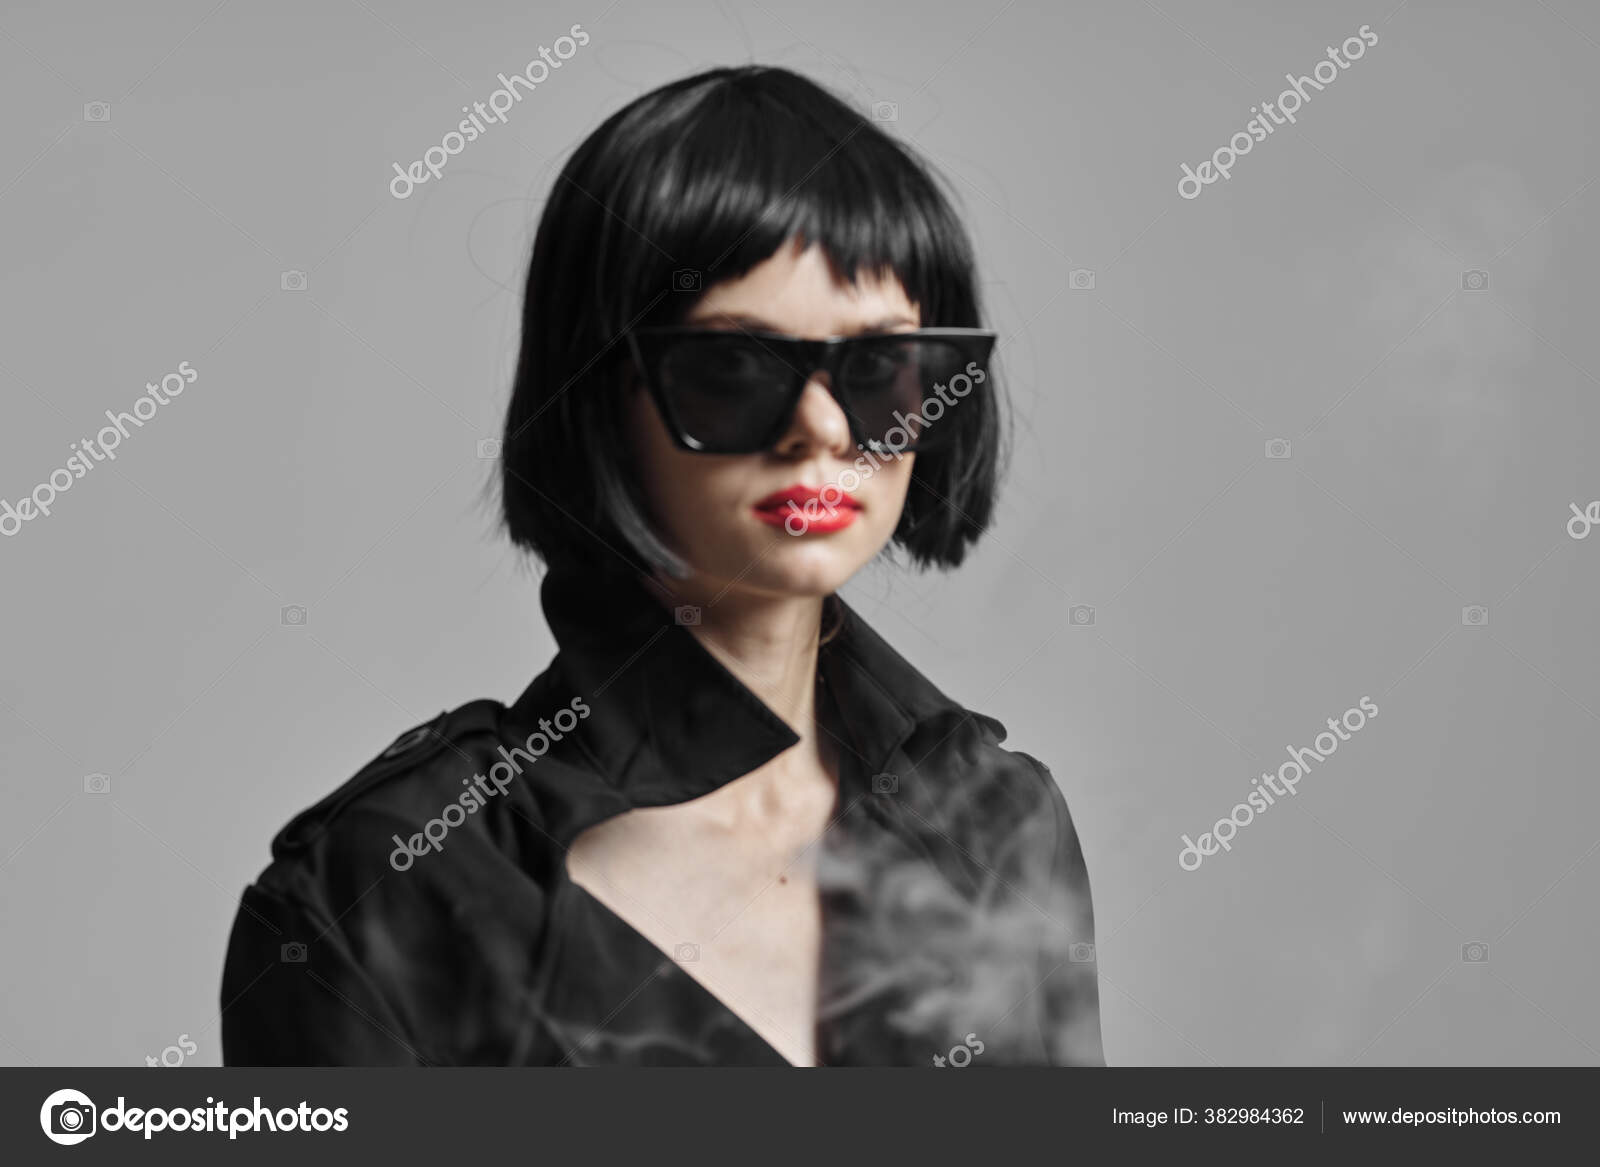 Joven Hermosa Mujer Gafas Sol Estudio Fotografía fotografía stock © ShotStudio #382984362 | Depositphotos